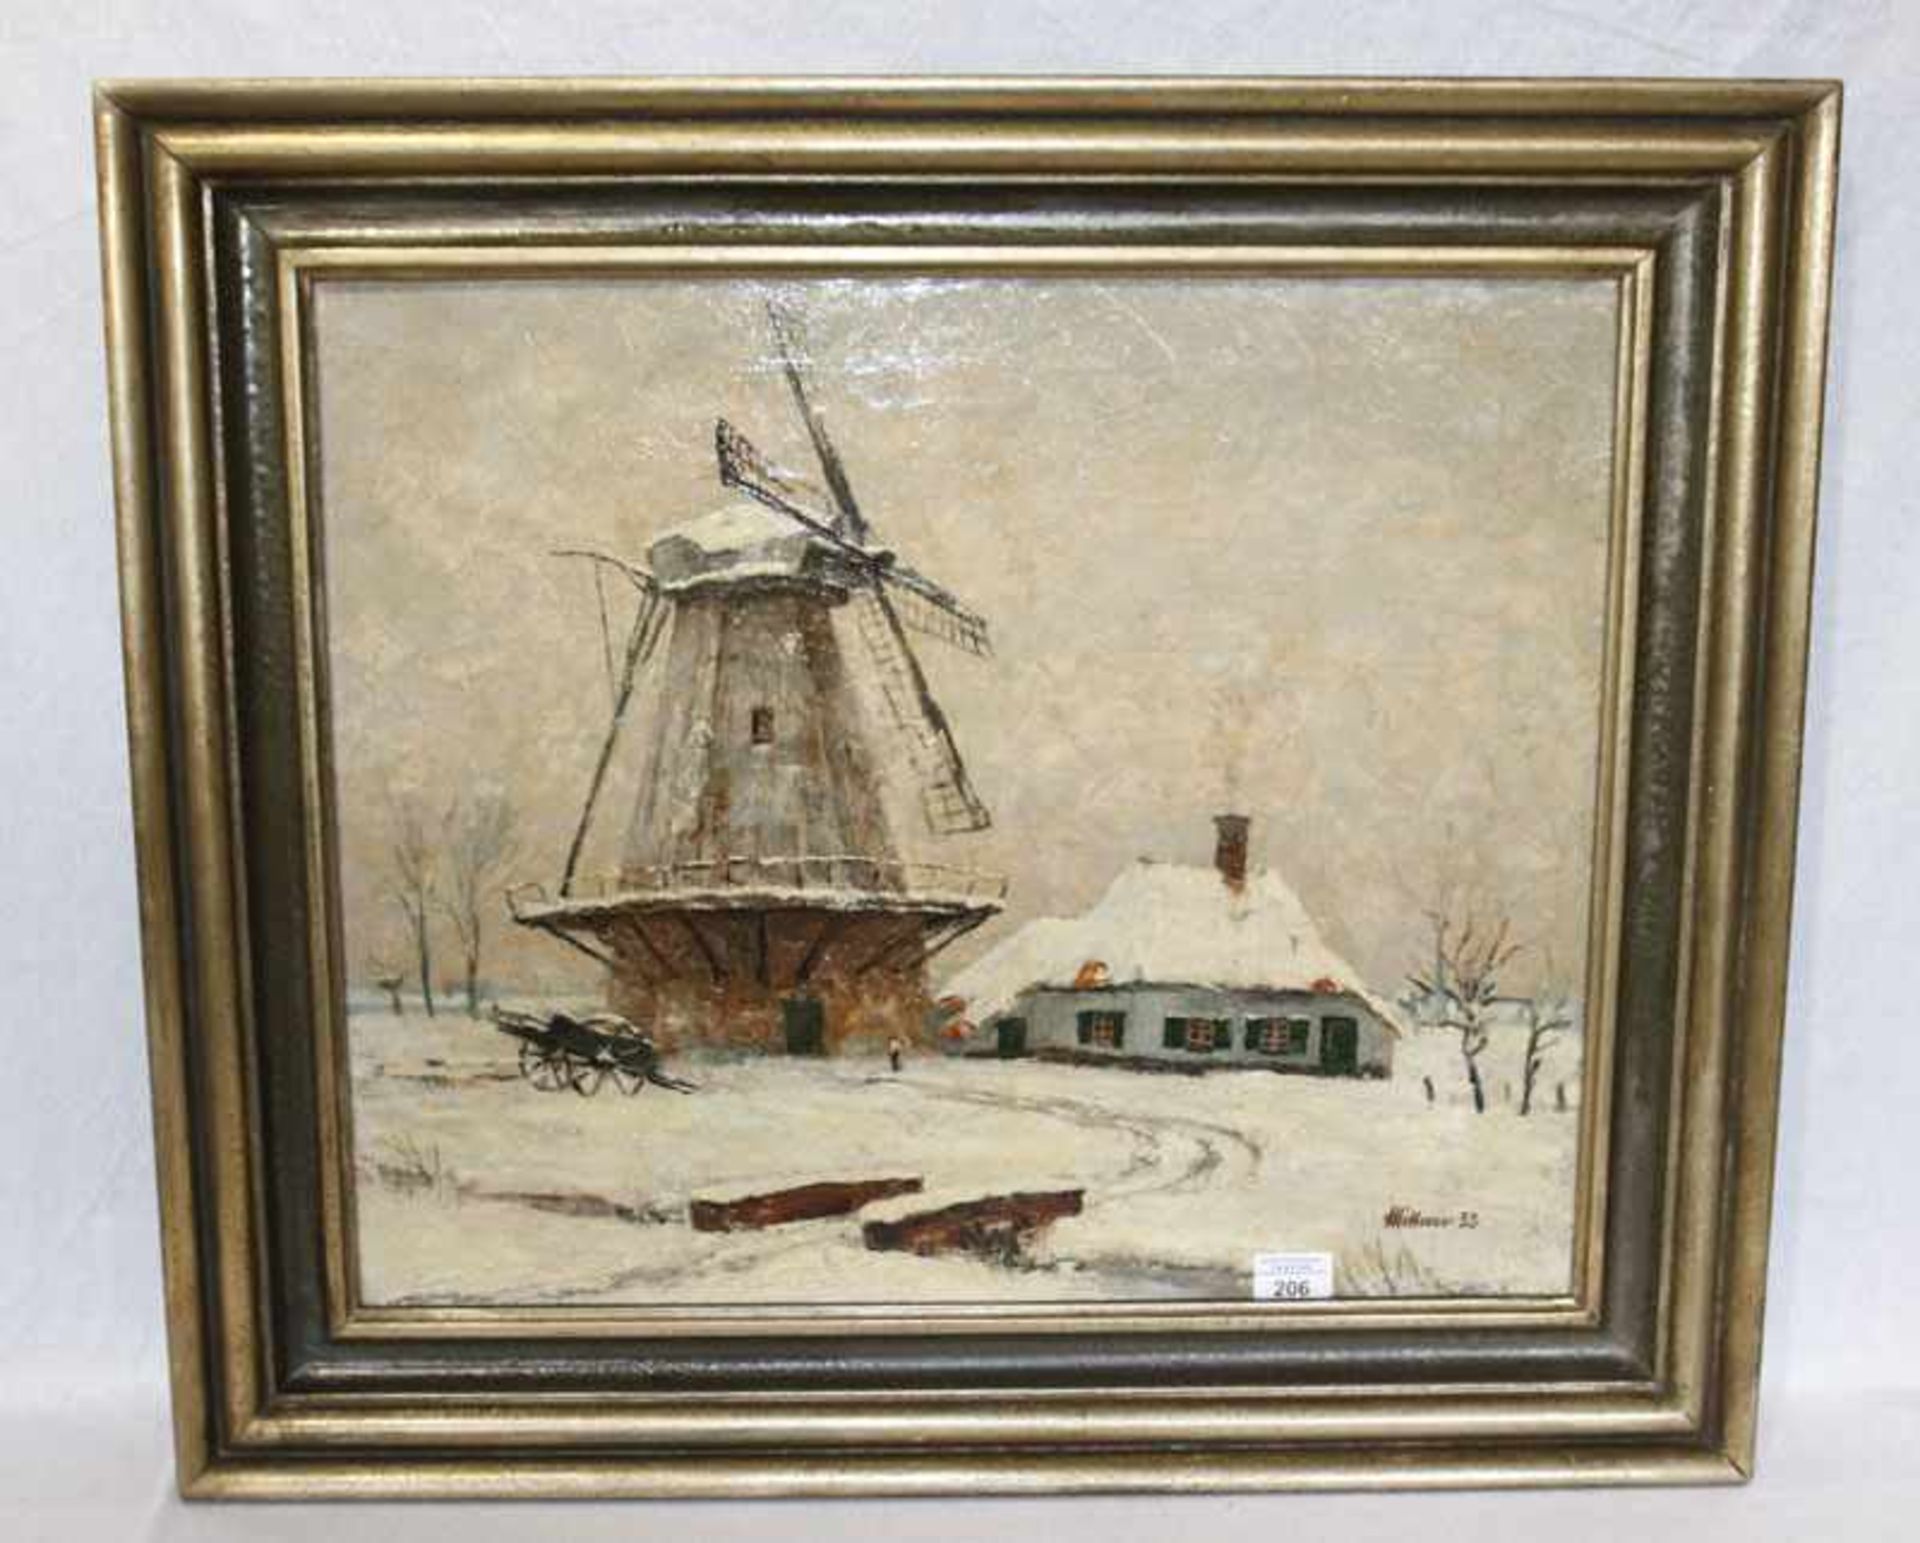 Gemälde ÖL/LW 'Winterlandschaft mit Windmühle', signiert Mittner ?, datiert 33, gerahmt, Rahmen